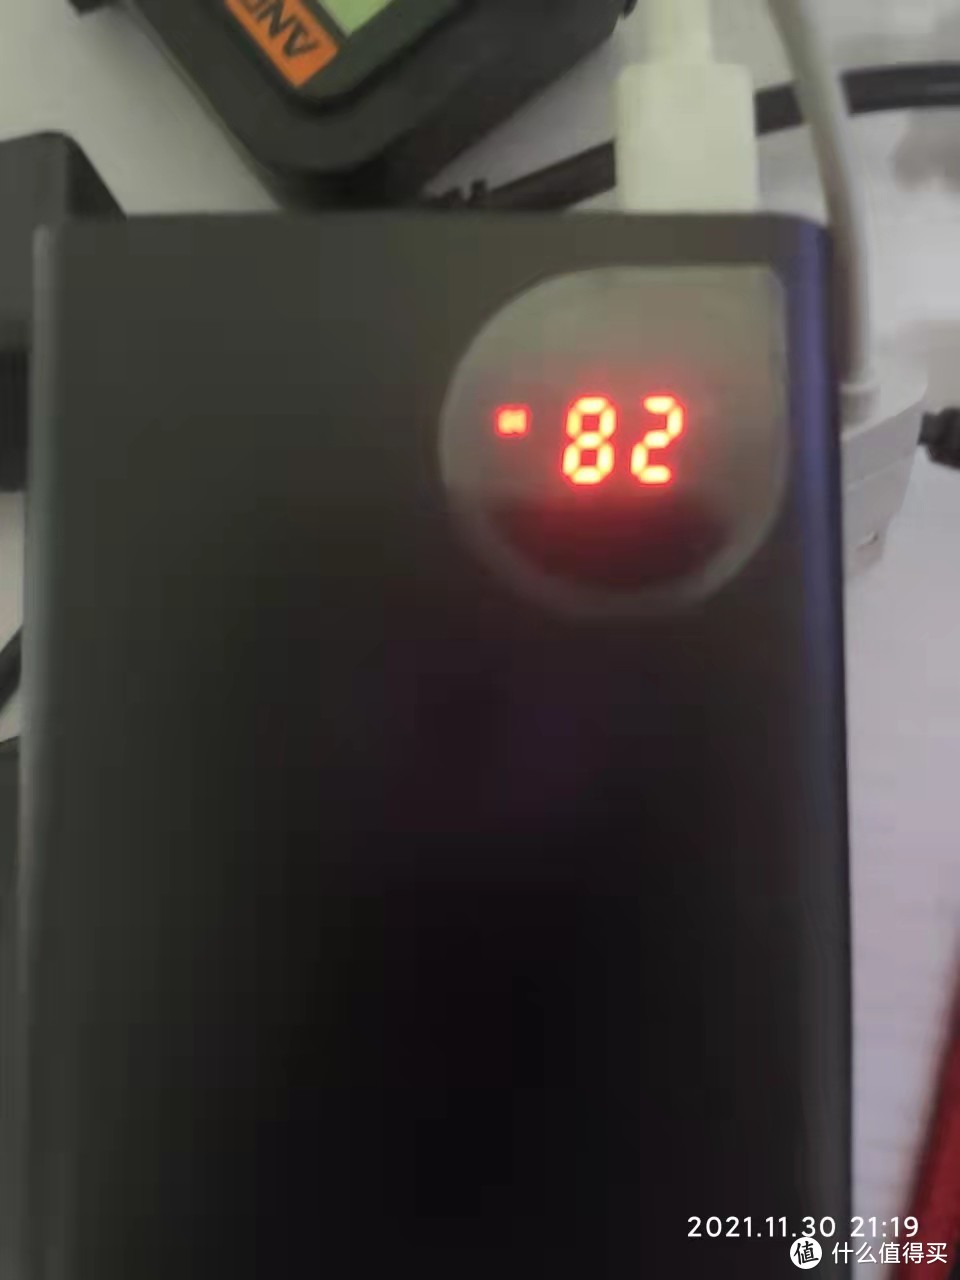 PD22W数显充电宝（京东自营倍思 62元），亮点是带电压电流显示